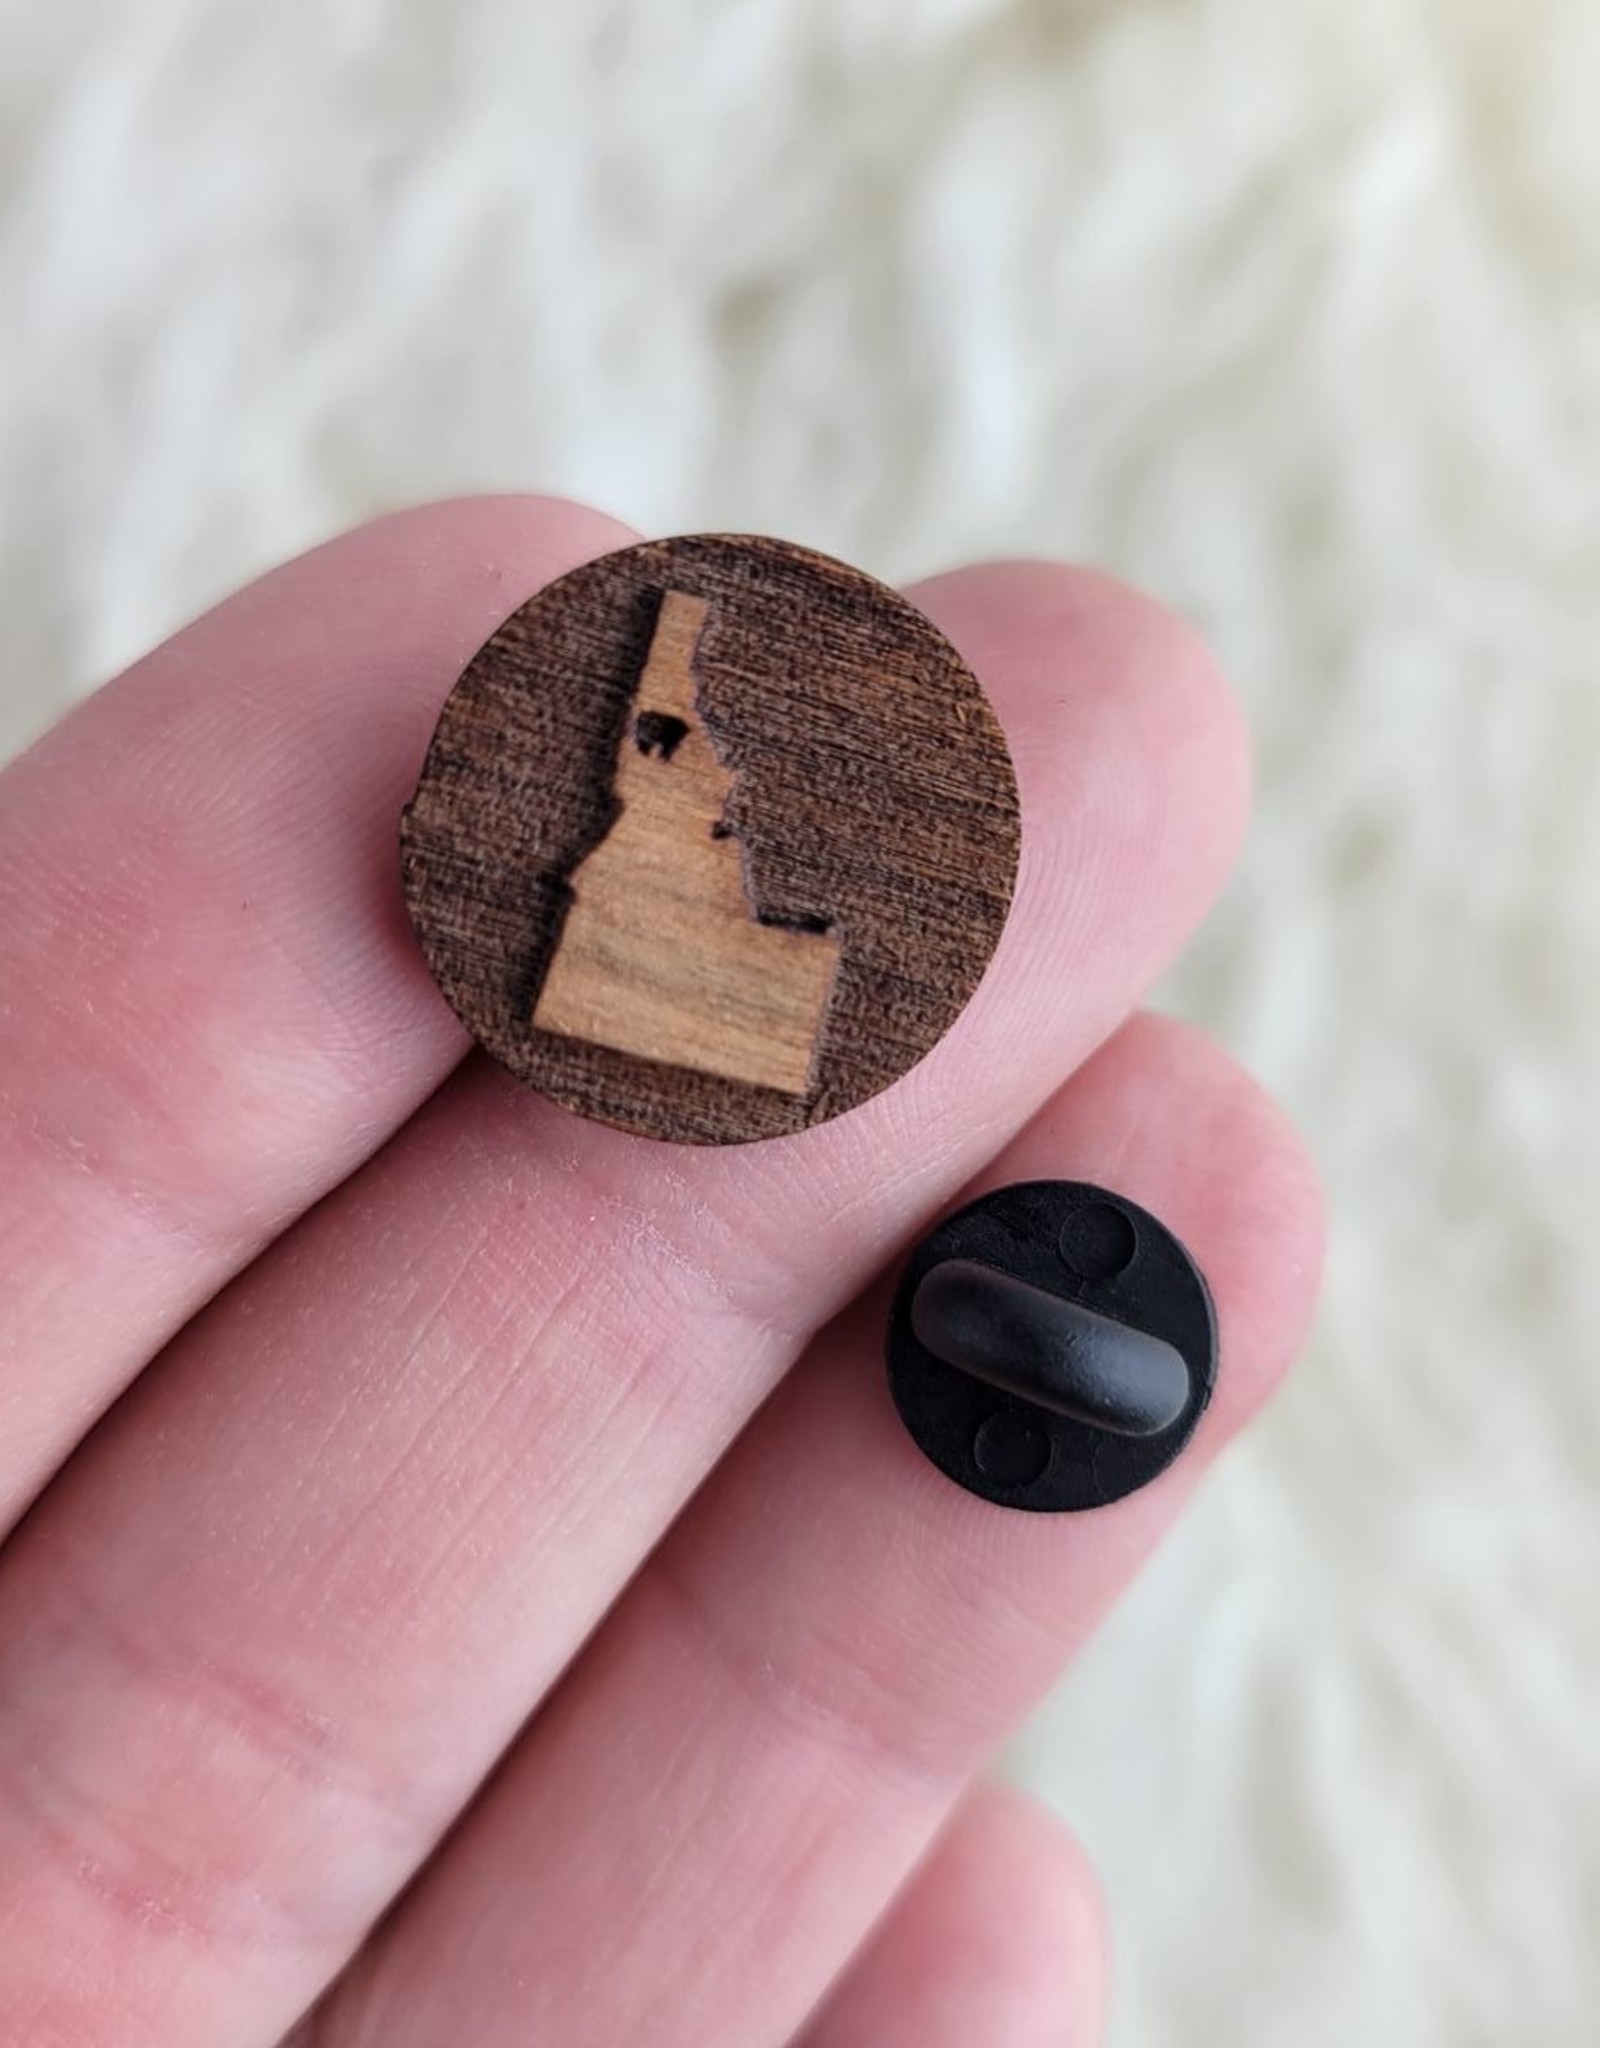 Idaho 3/4 inch pin